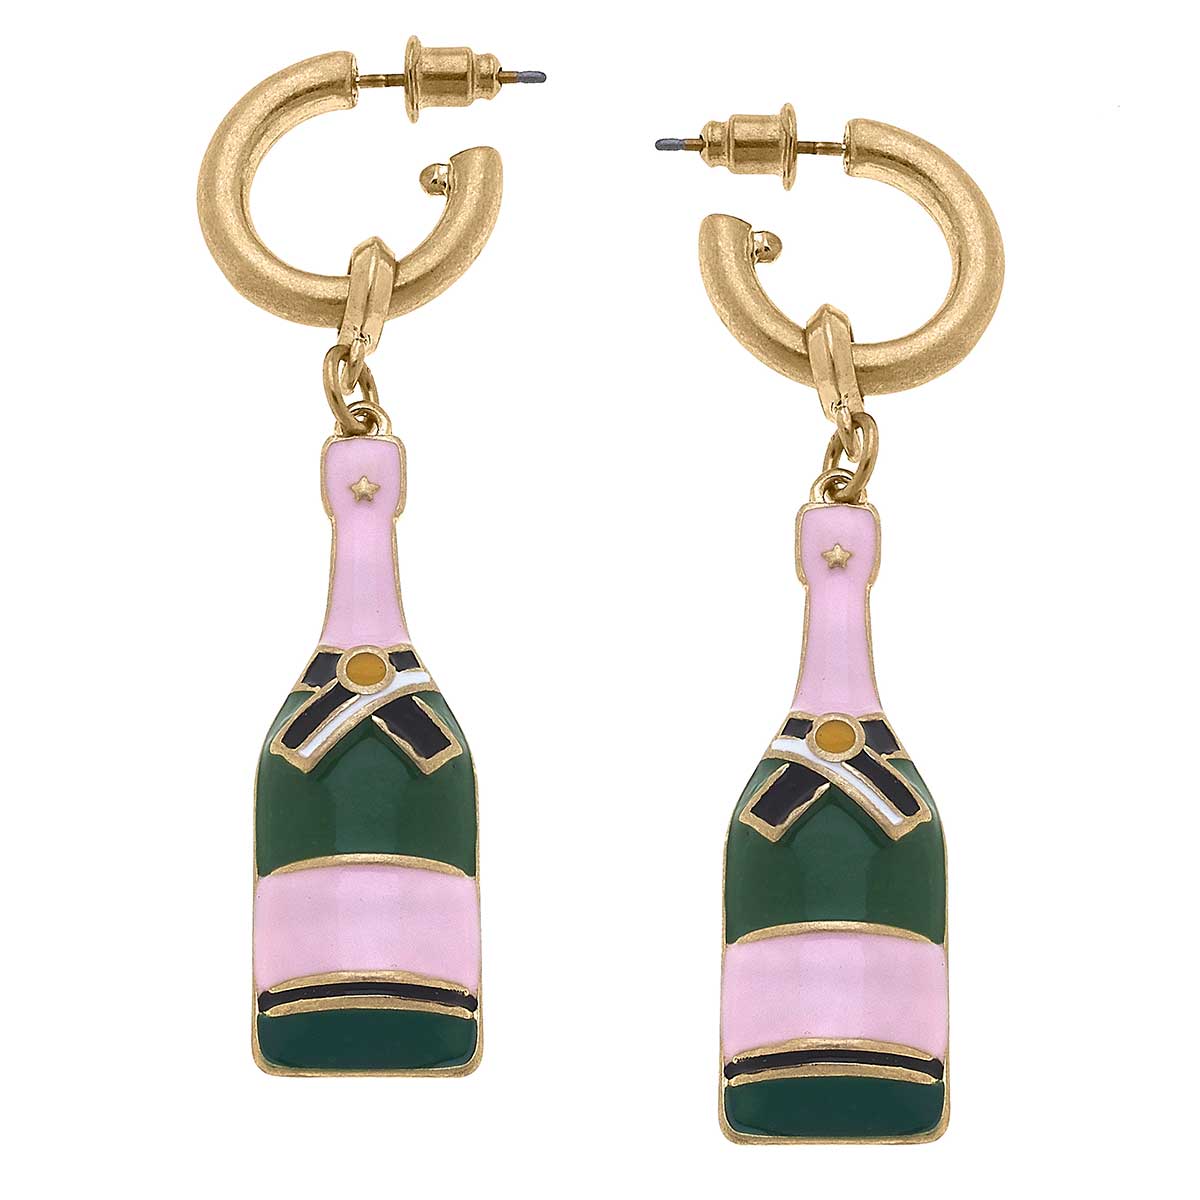 Lola Champagne Bottle Earrings in Pink & Green